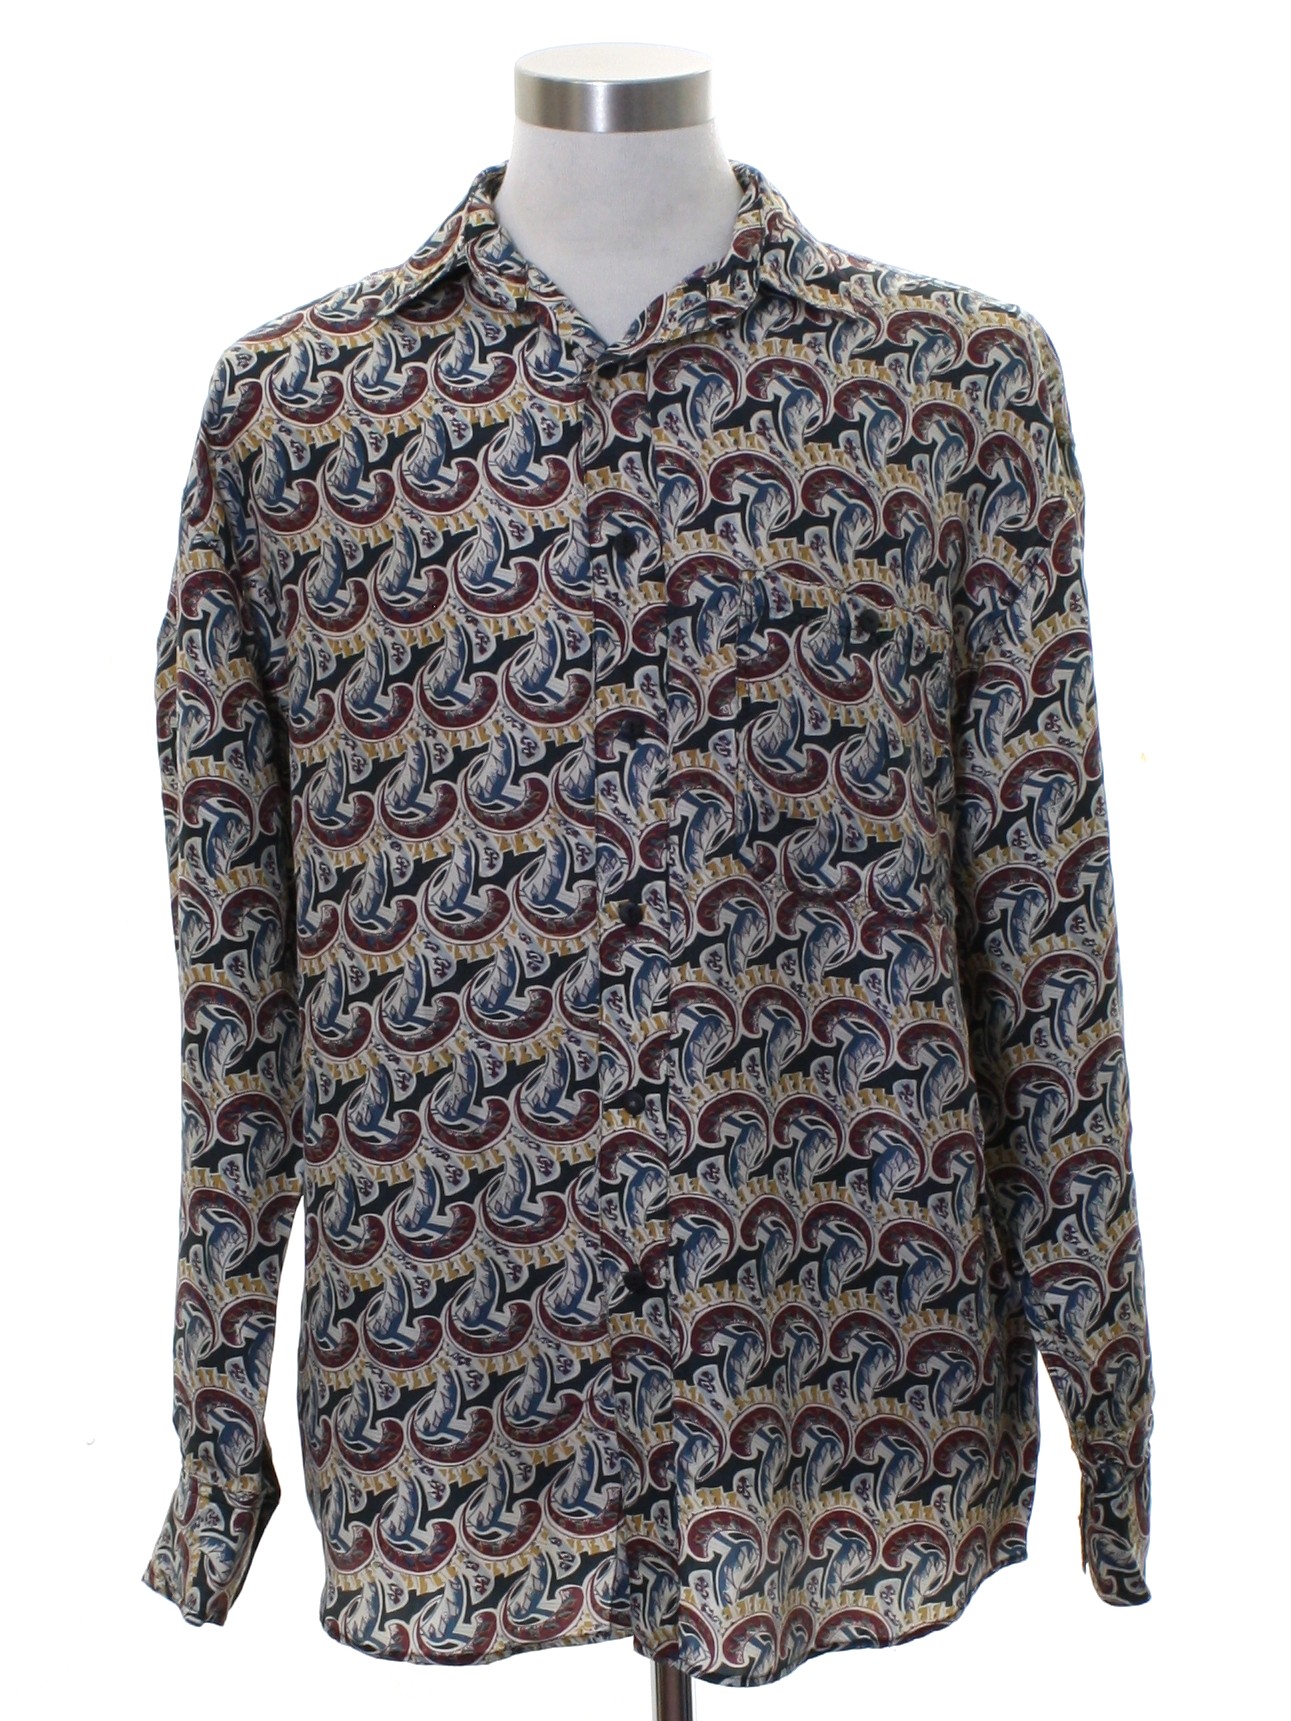 Retro 1980's Shirt (Silk Uomo) : Late 80s or Early 90s -Silk Uomo- Mens ...